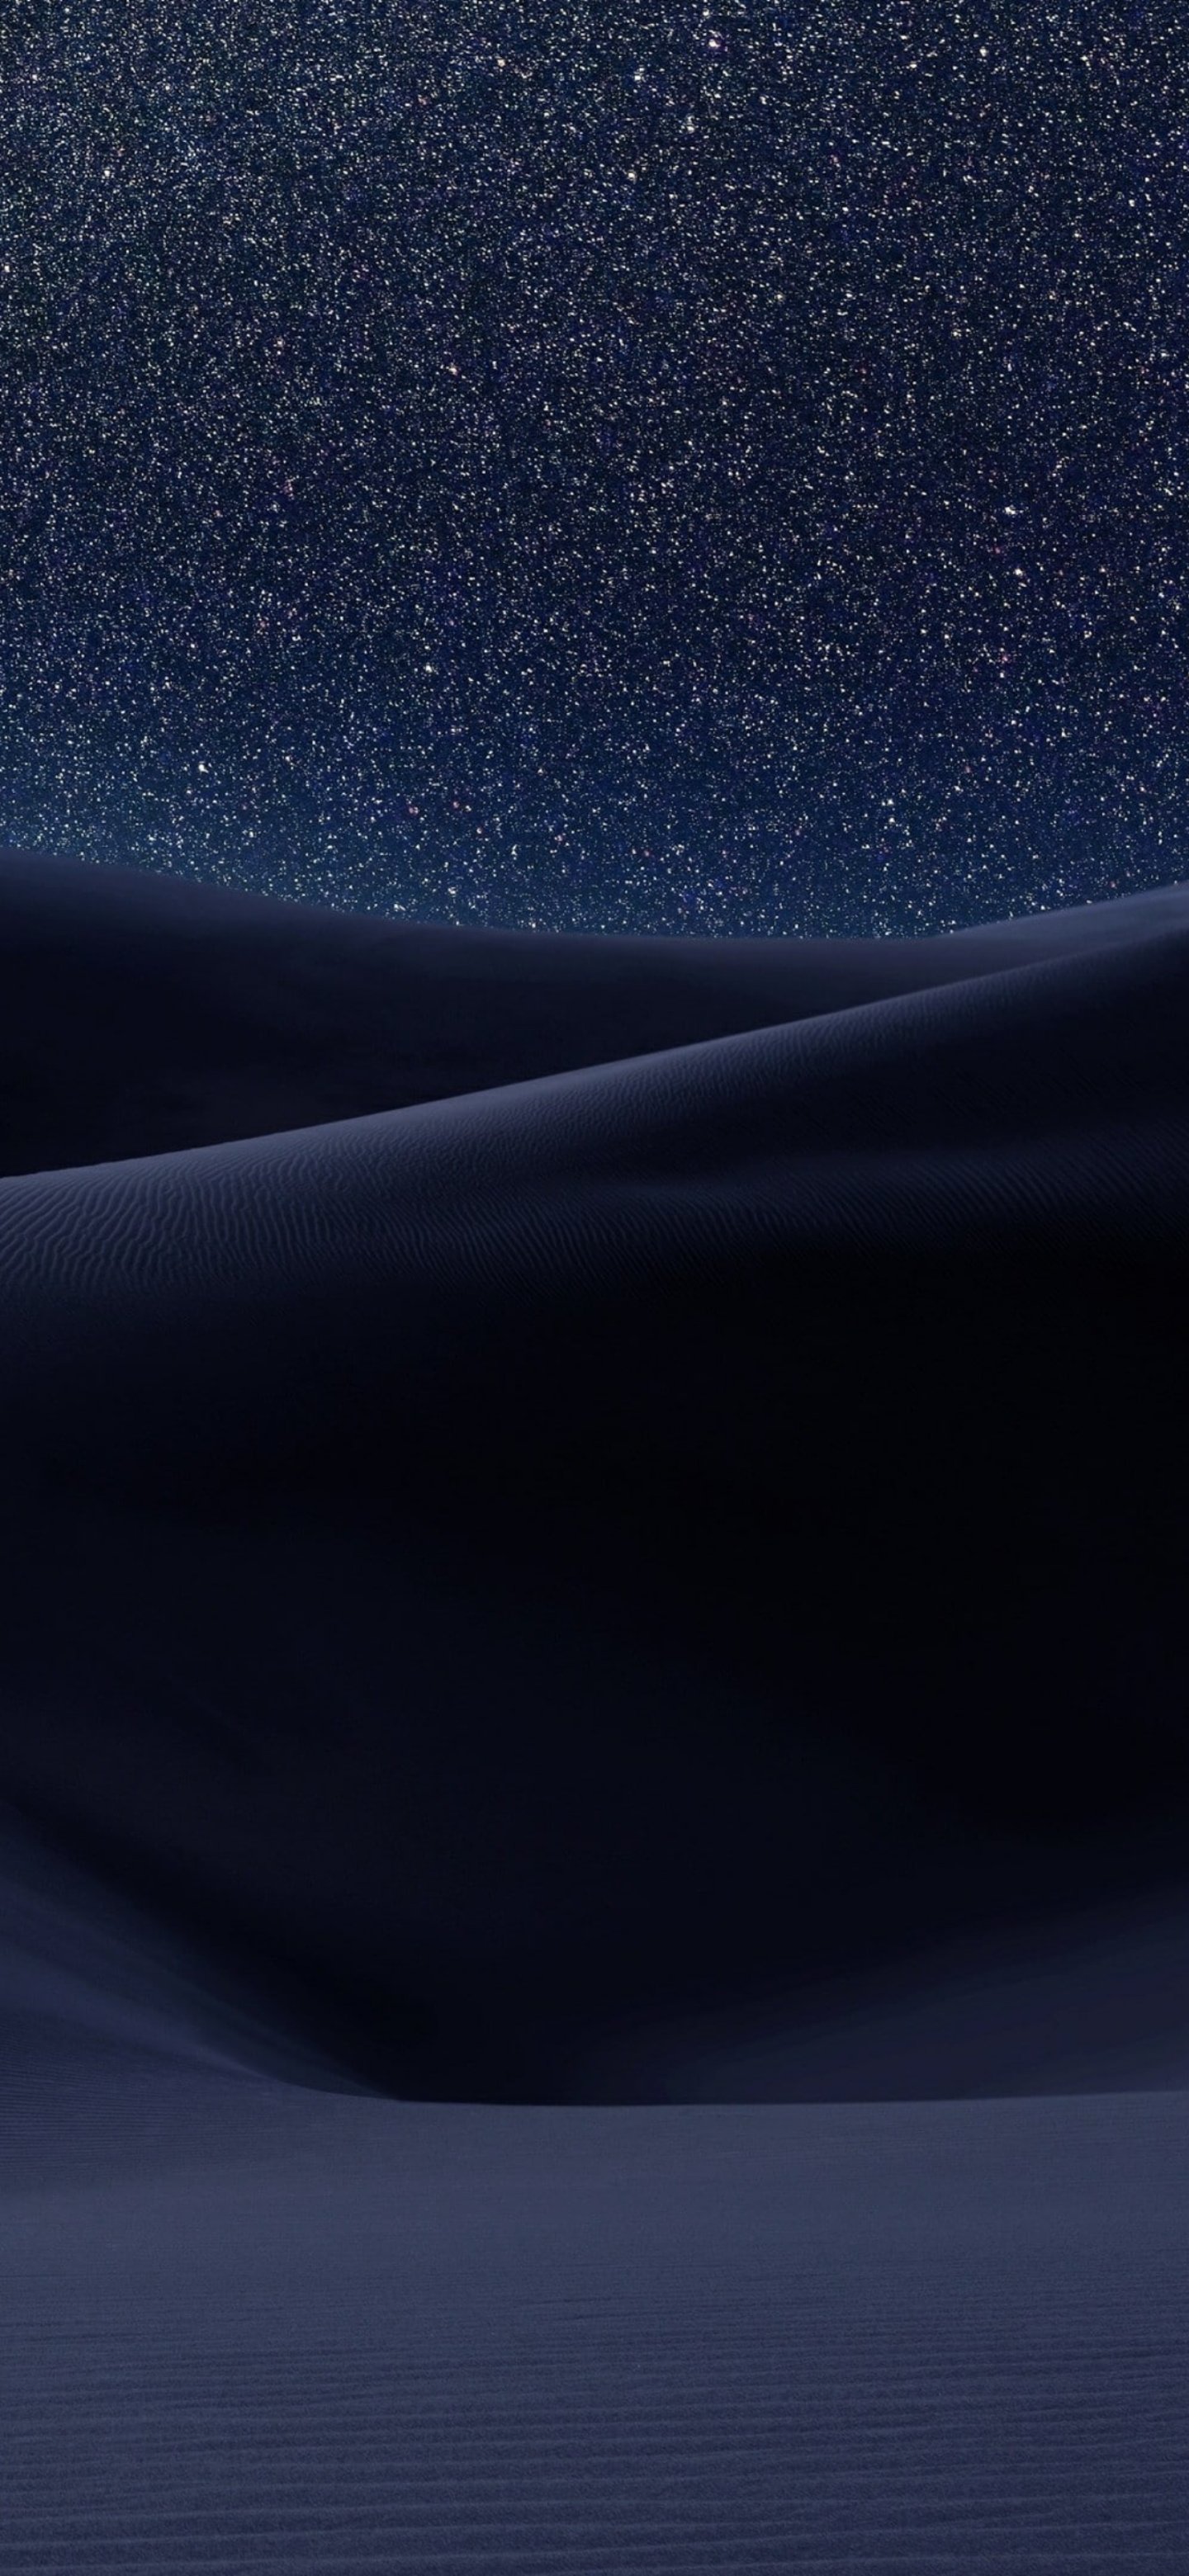 Fondos de pantalla de dunas de noche